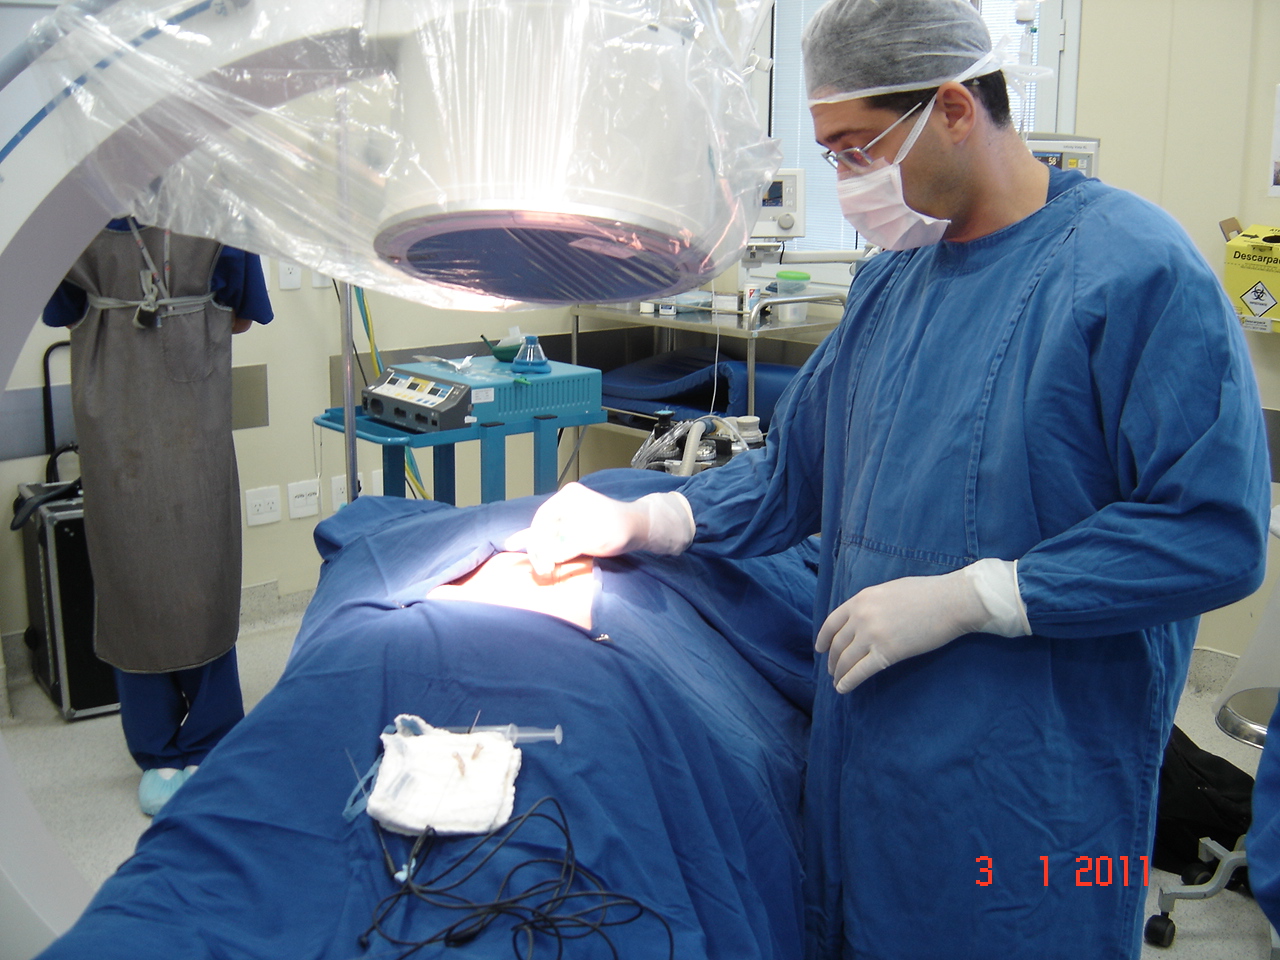 Nesta técnica, um eletrodo em forma de agulha é colocado sobre os pequenos nervos que transmitem a dor das articulações facetárias desgastadas